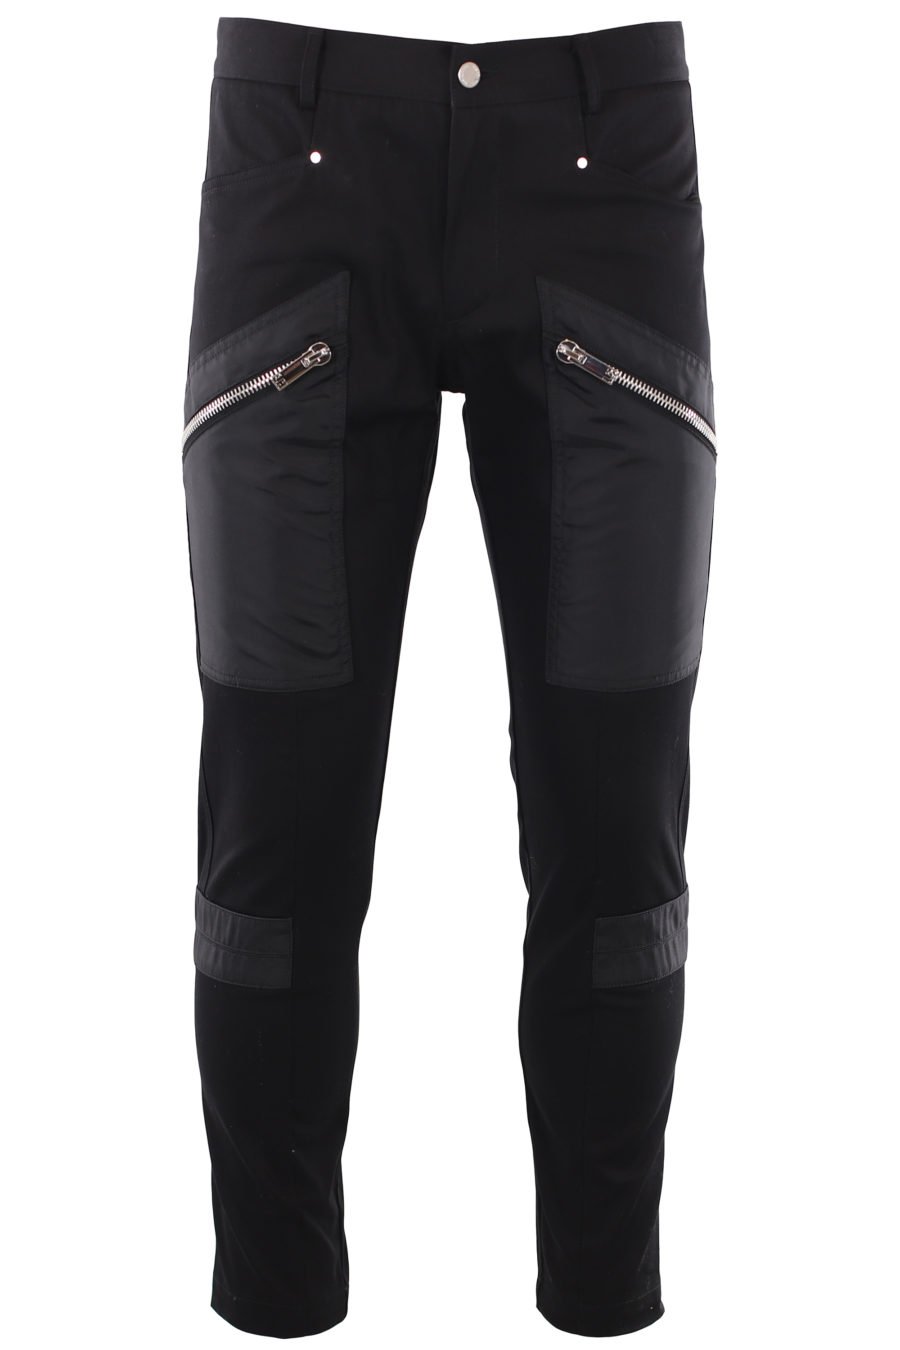 Pantalón negro con detalles de nylon - IMG 0997